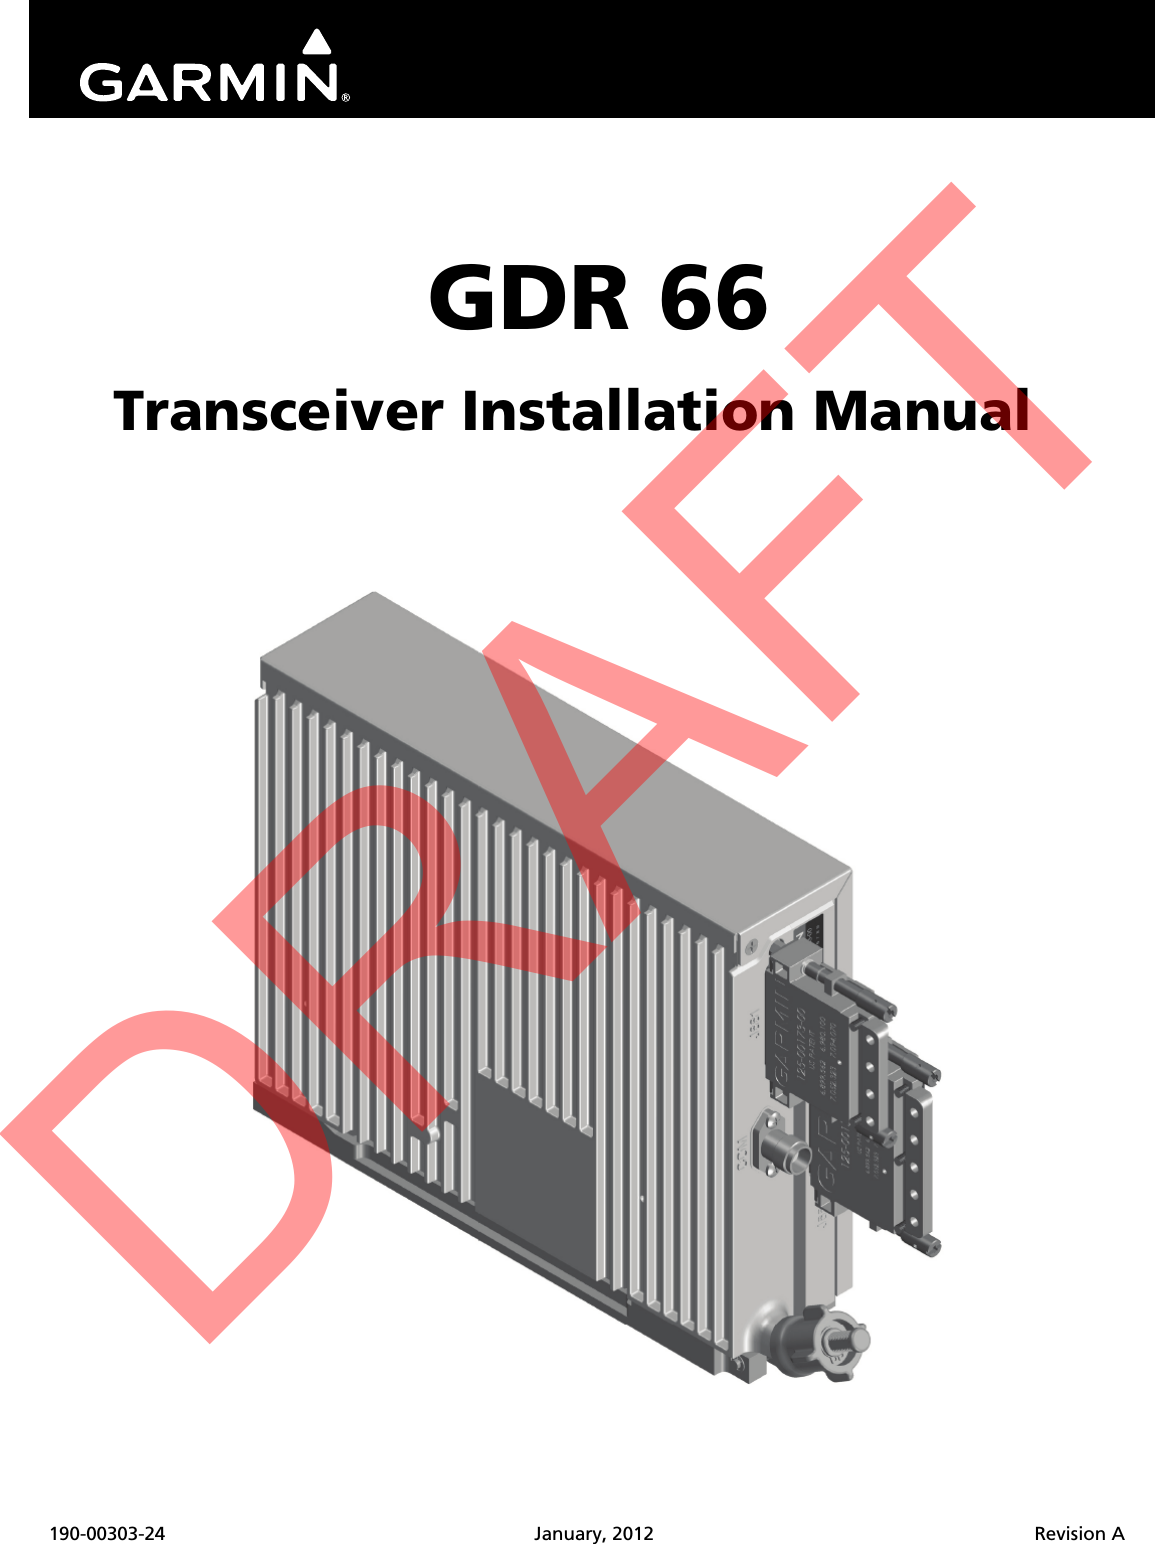 190-00303-24 January, 2012 Revision AGDR 66Transceiver Installation ManualDRAFT